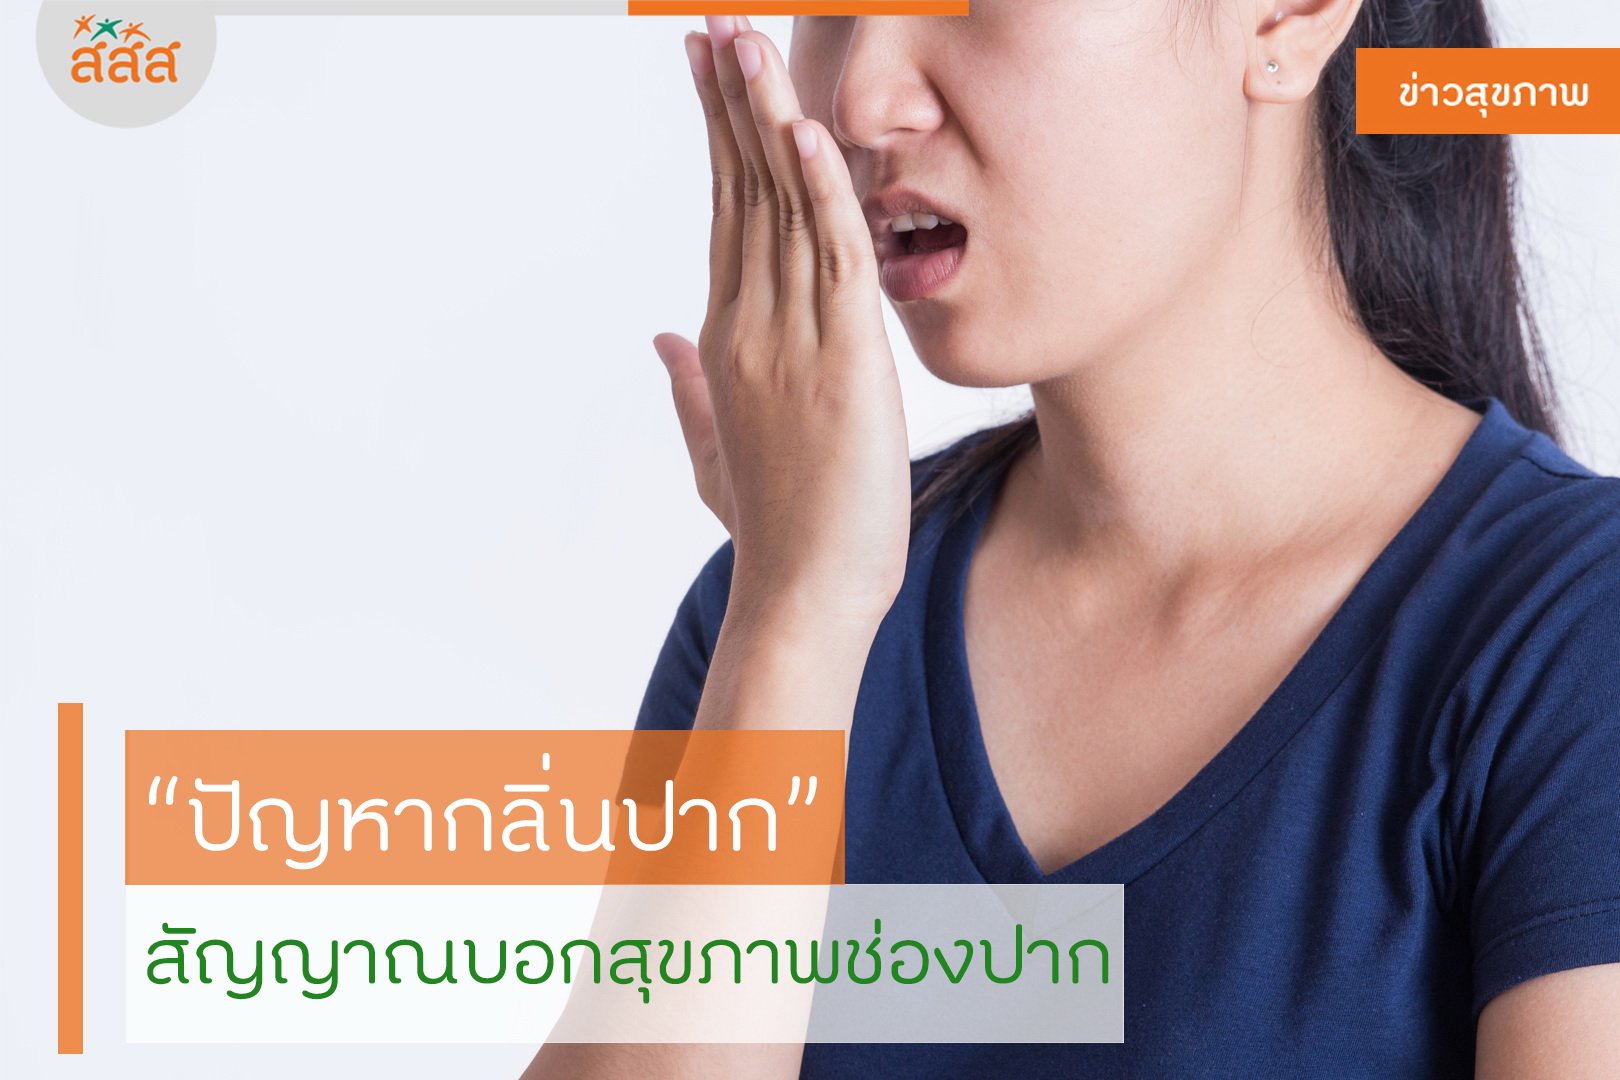 ปัญหากลิ่นปาก สัญญาณบอกสุขภาพช่องปาก thaihealth